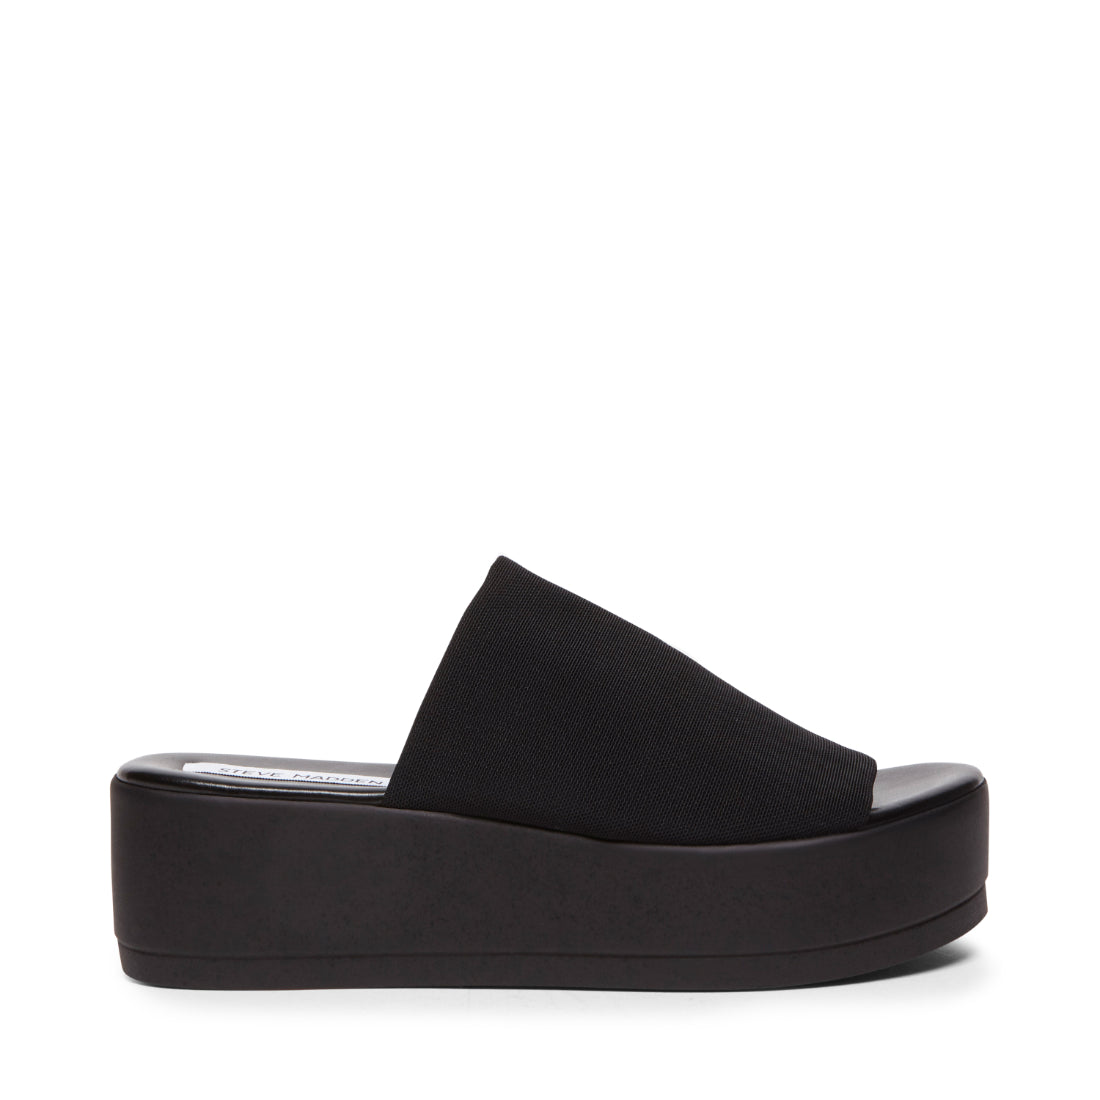 SLINKY Black Platform Slide Sandals | Women's Designer Sandals